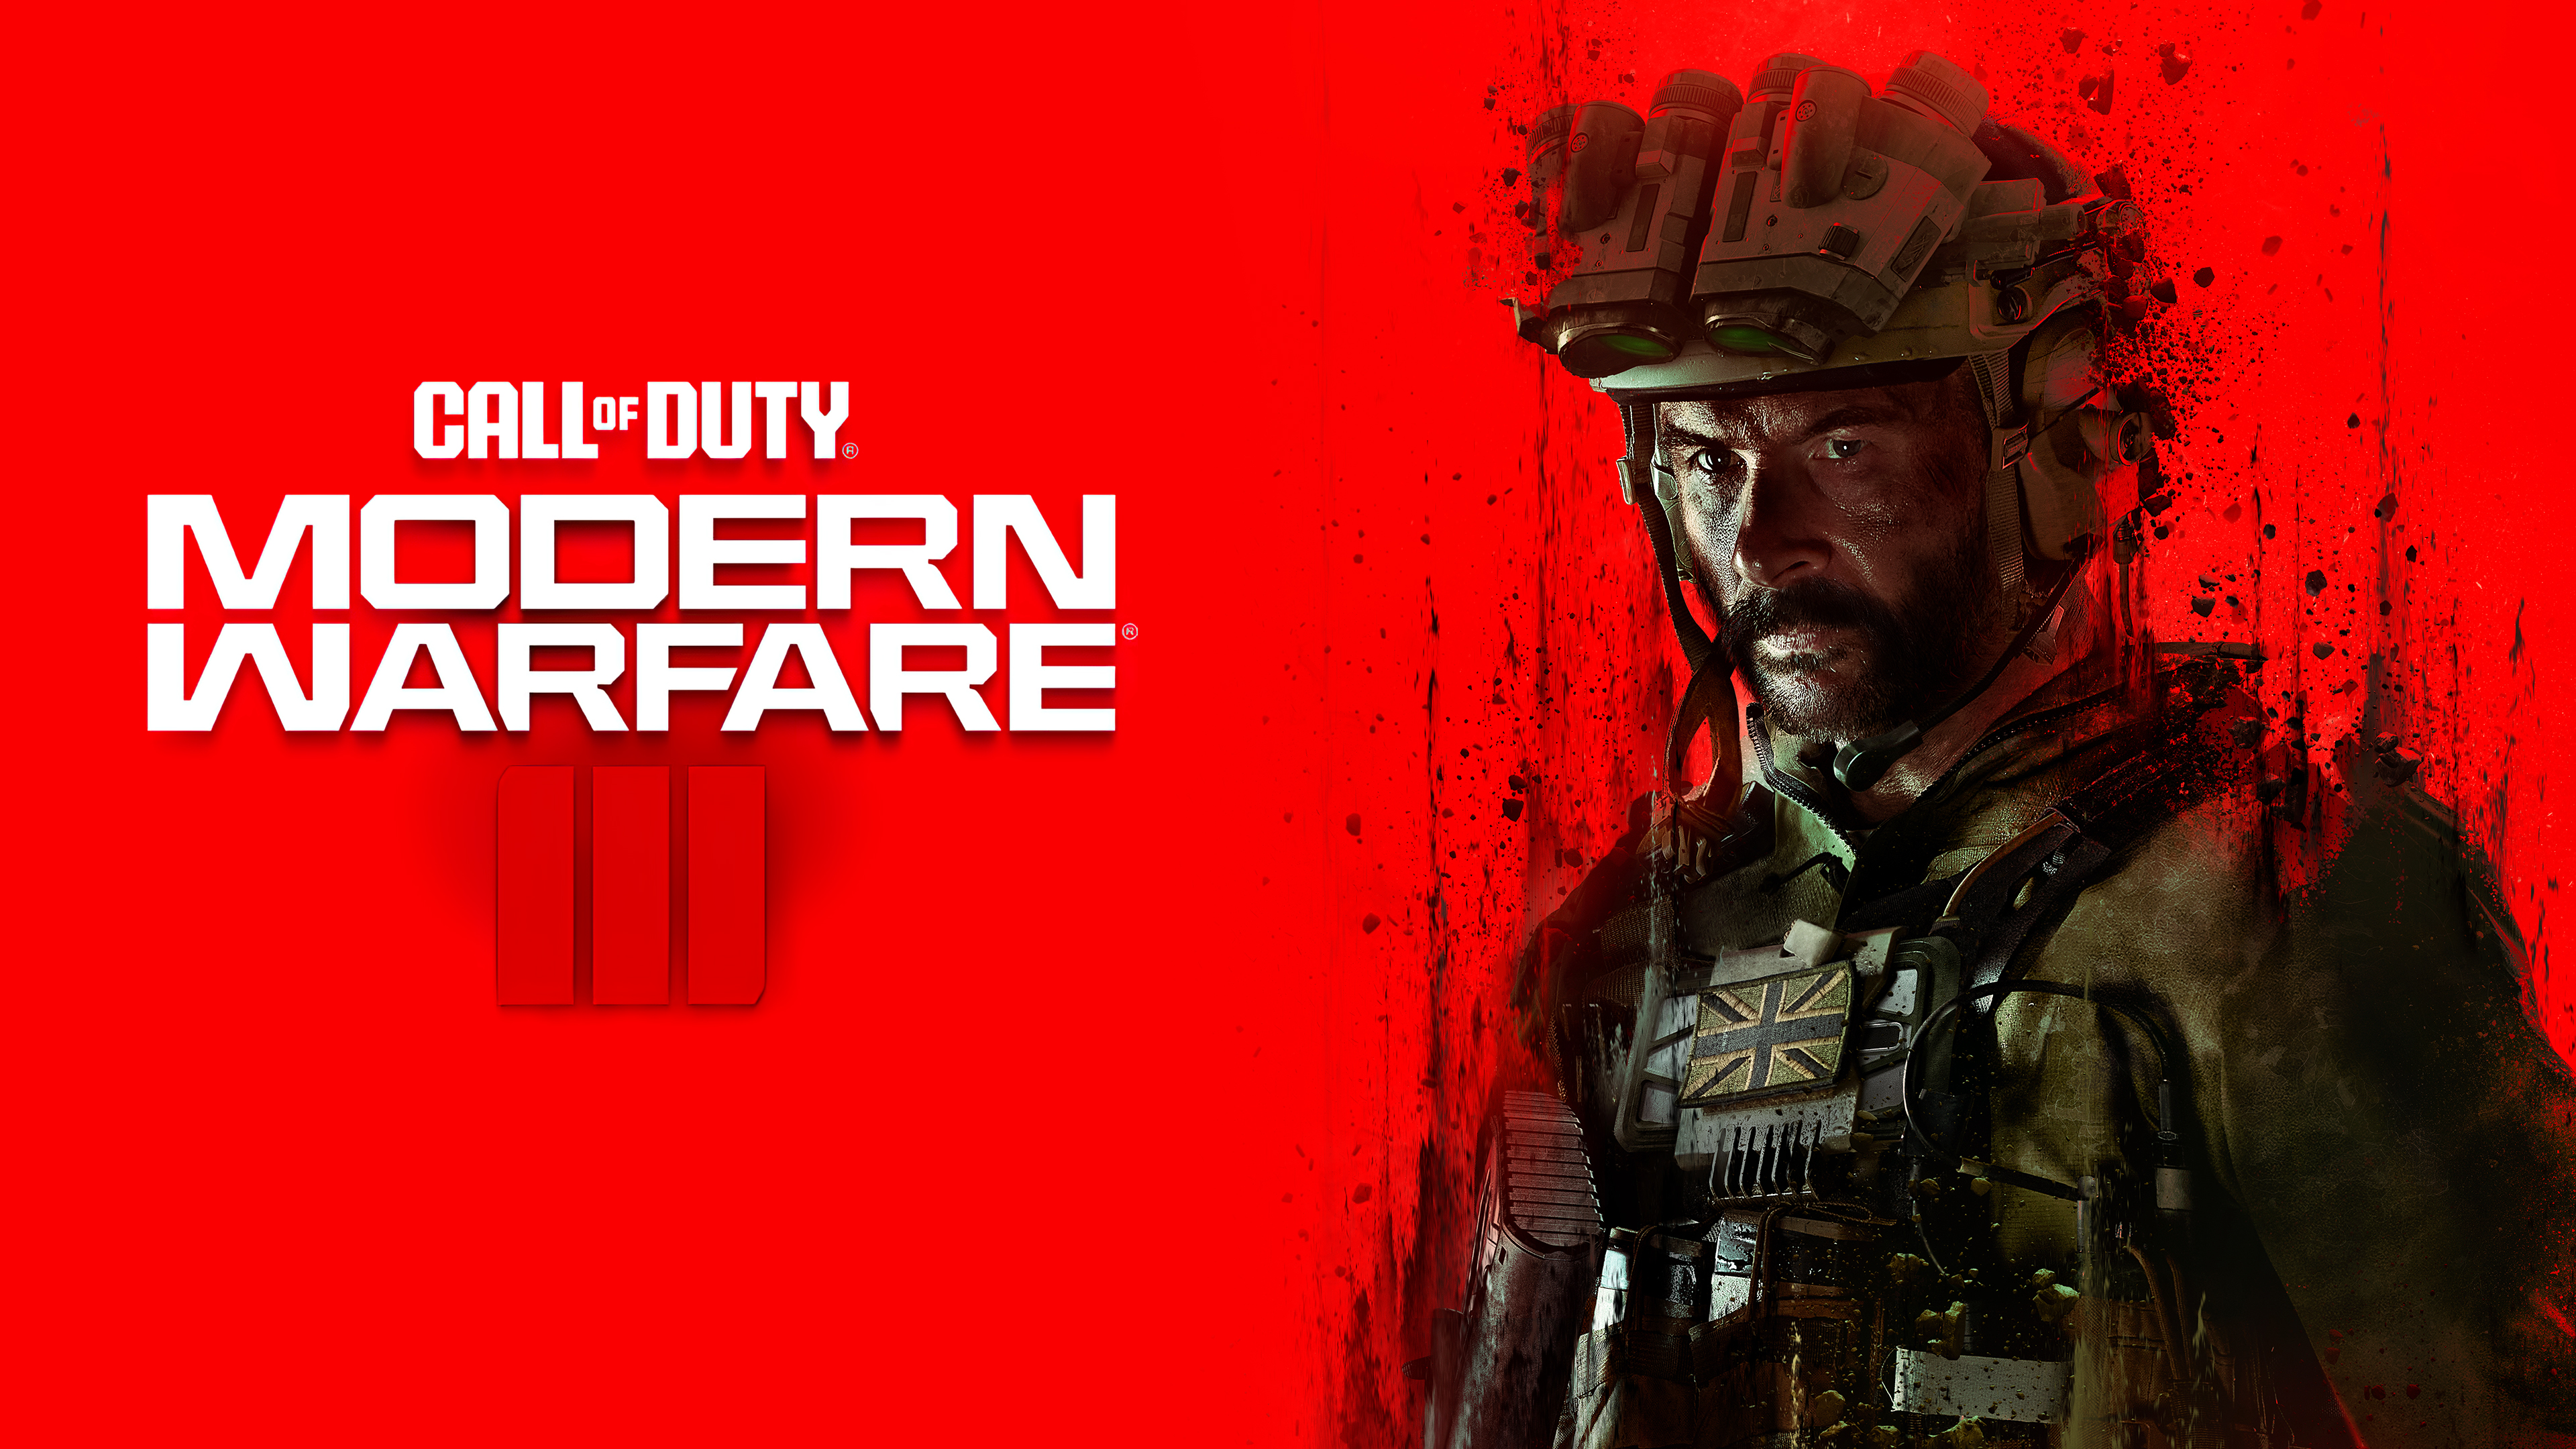 Battlefield 3 vs. Call of Duty: Modern Warfare 3: Multiplayer grudge match  | Digital Trends